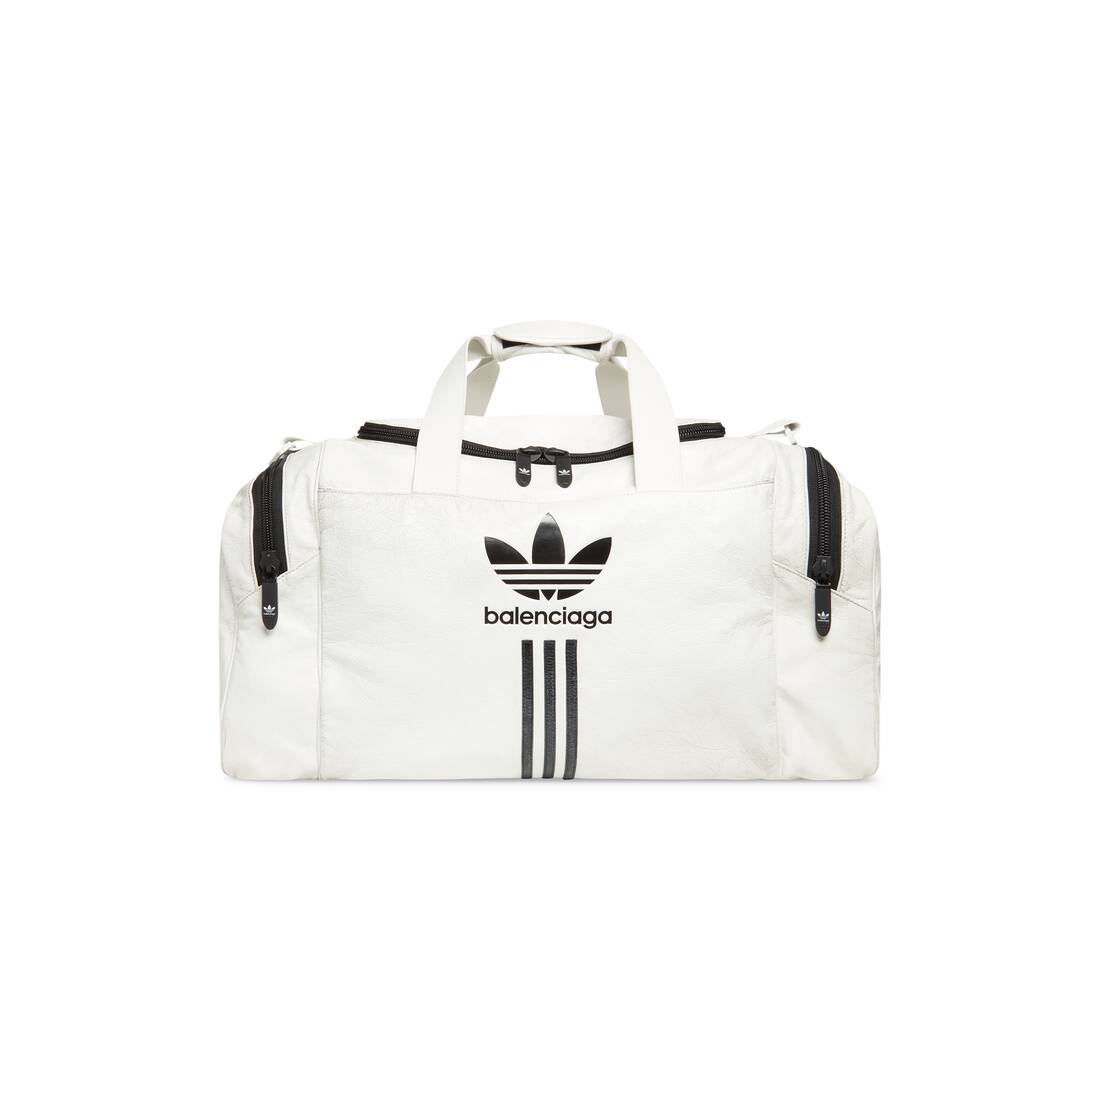 Mens Balenciaga  Adidas Gym Bag in White  Balenciaga NL